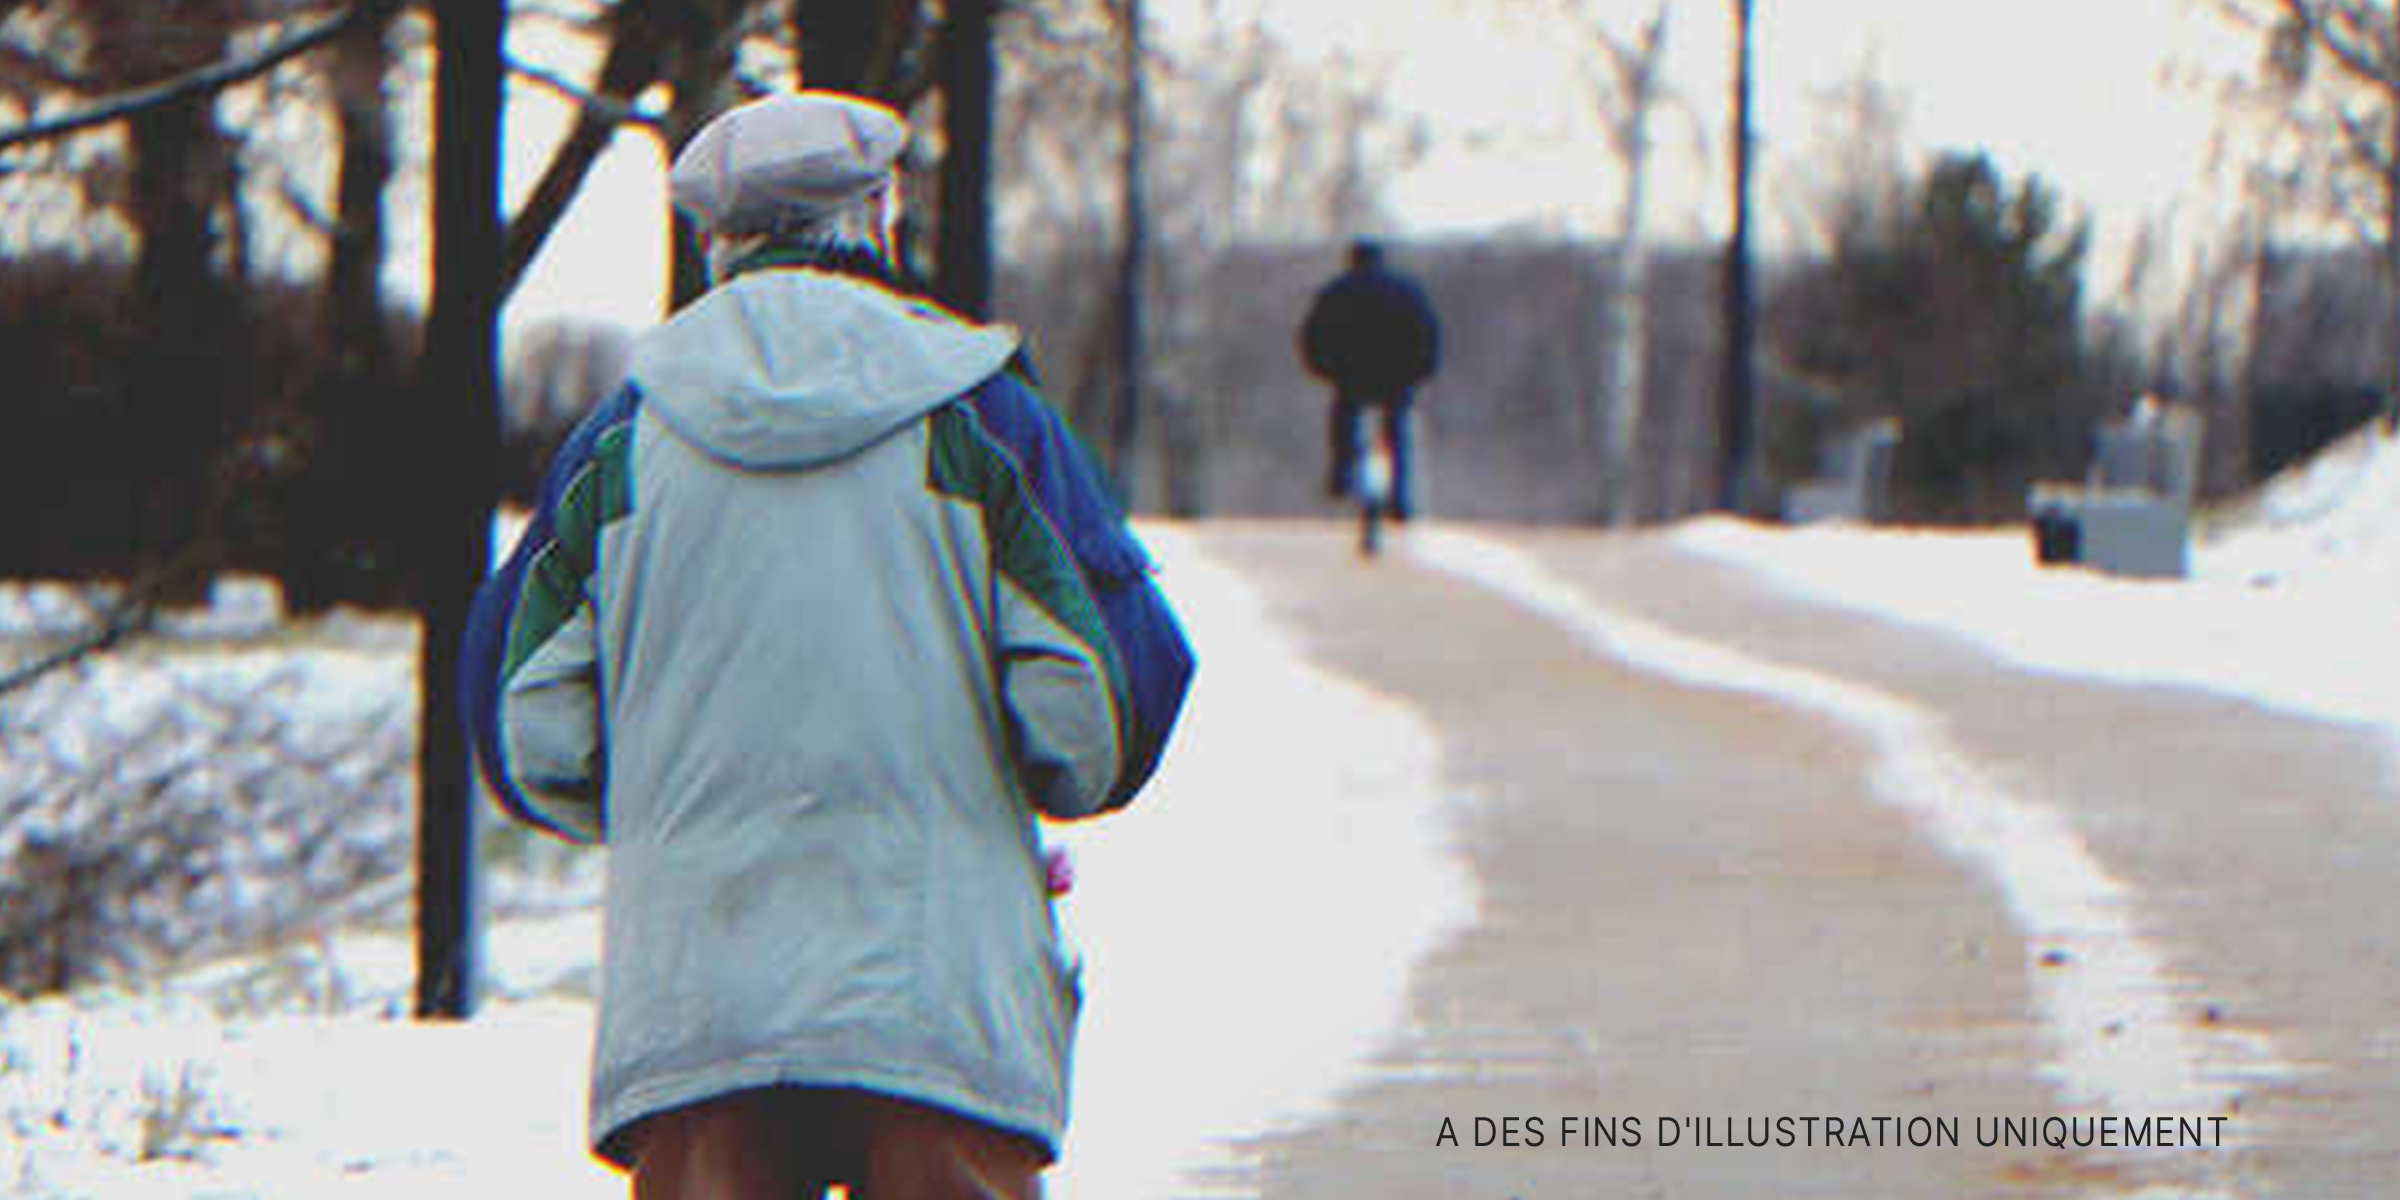 Une personne âgée marchant seule dans la rue enneigée | Source : Shutterstock